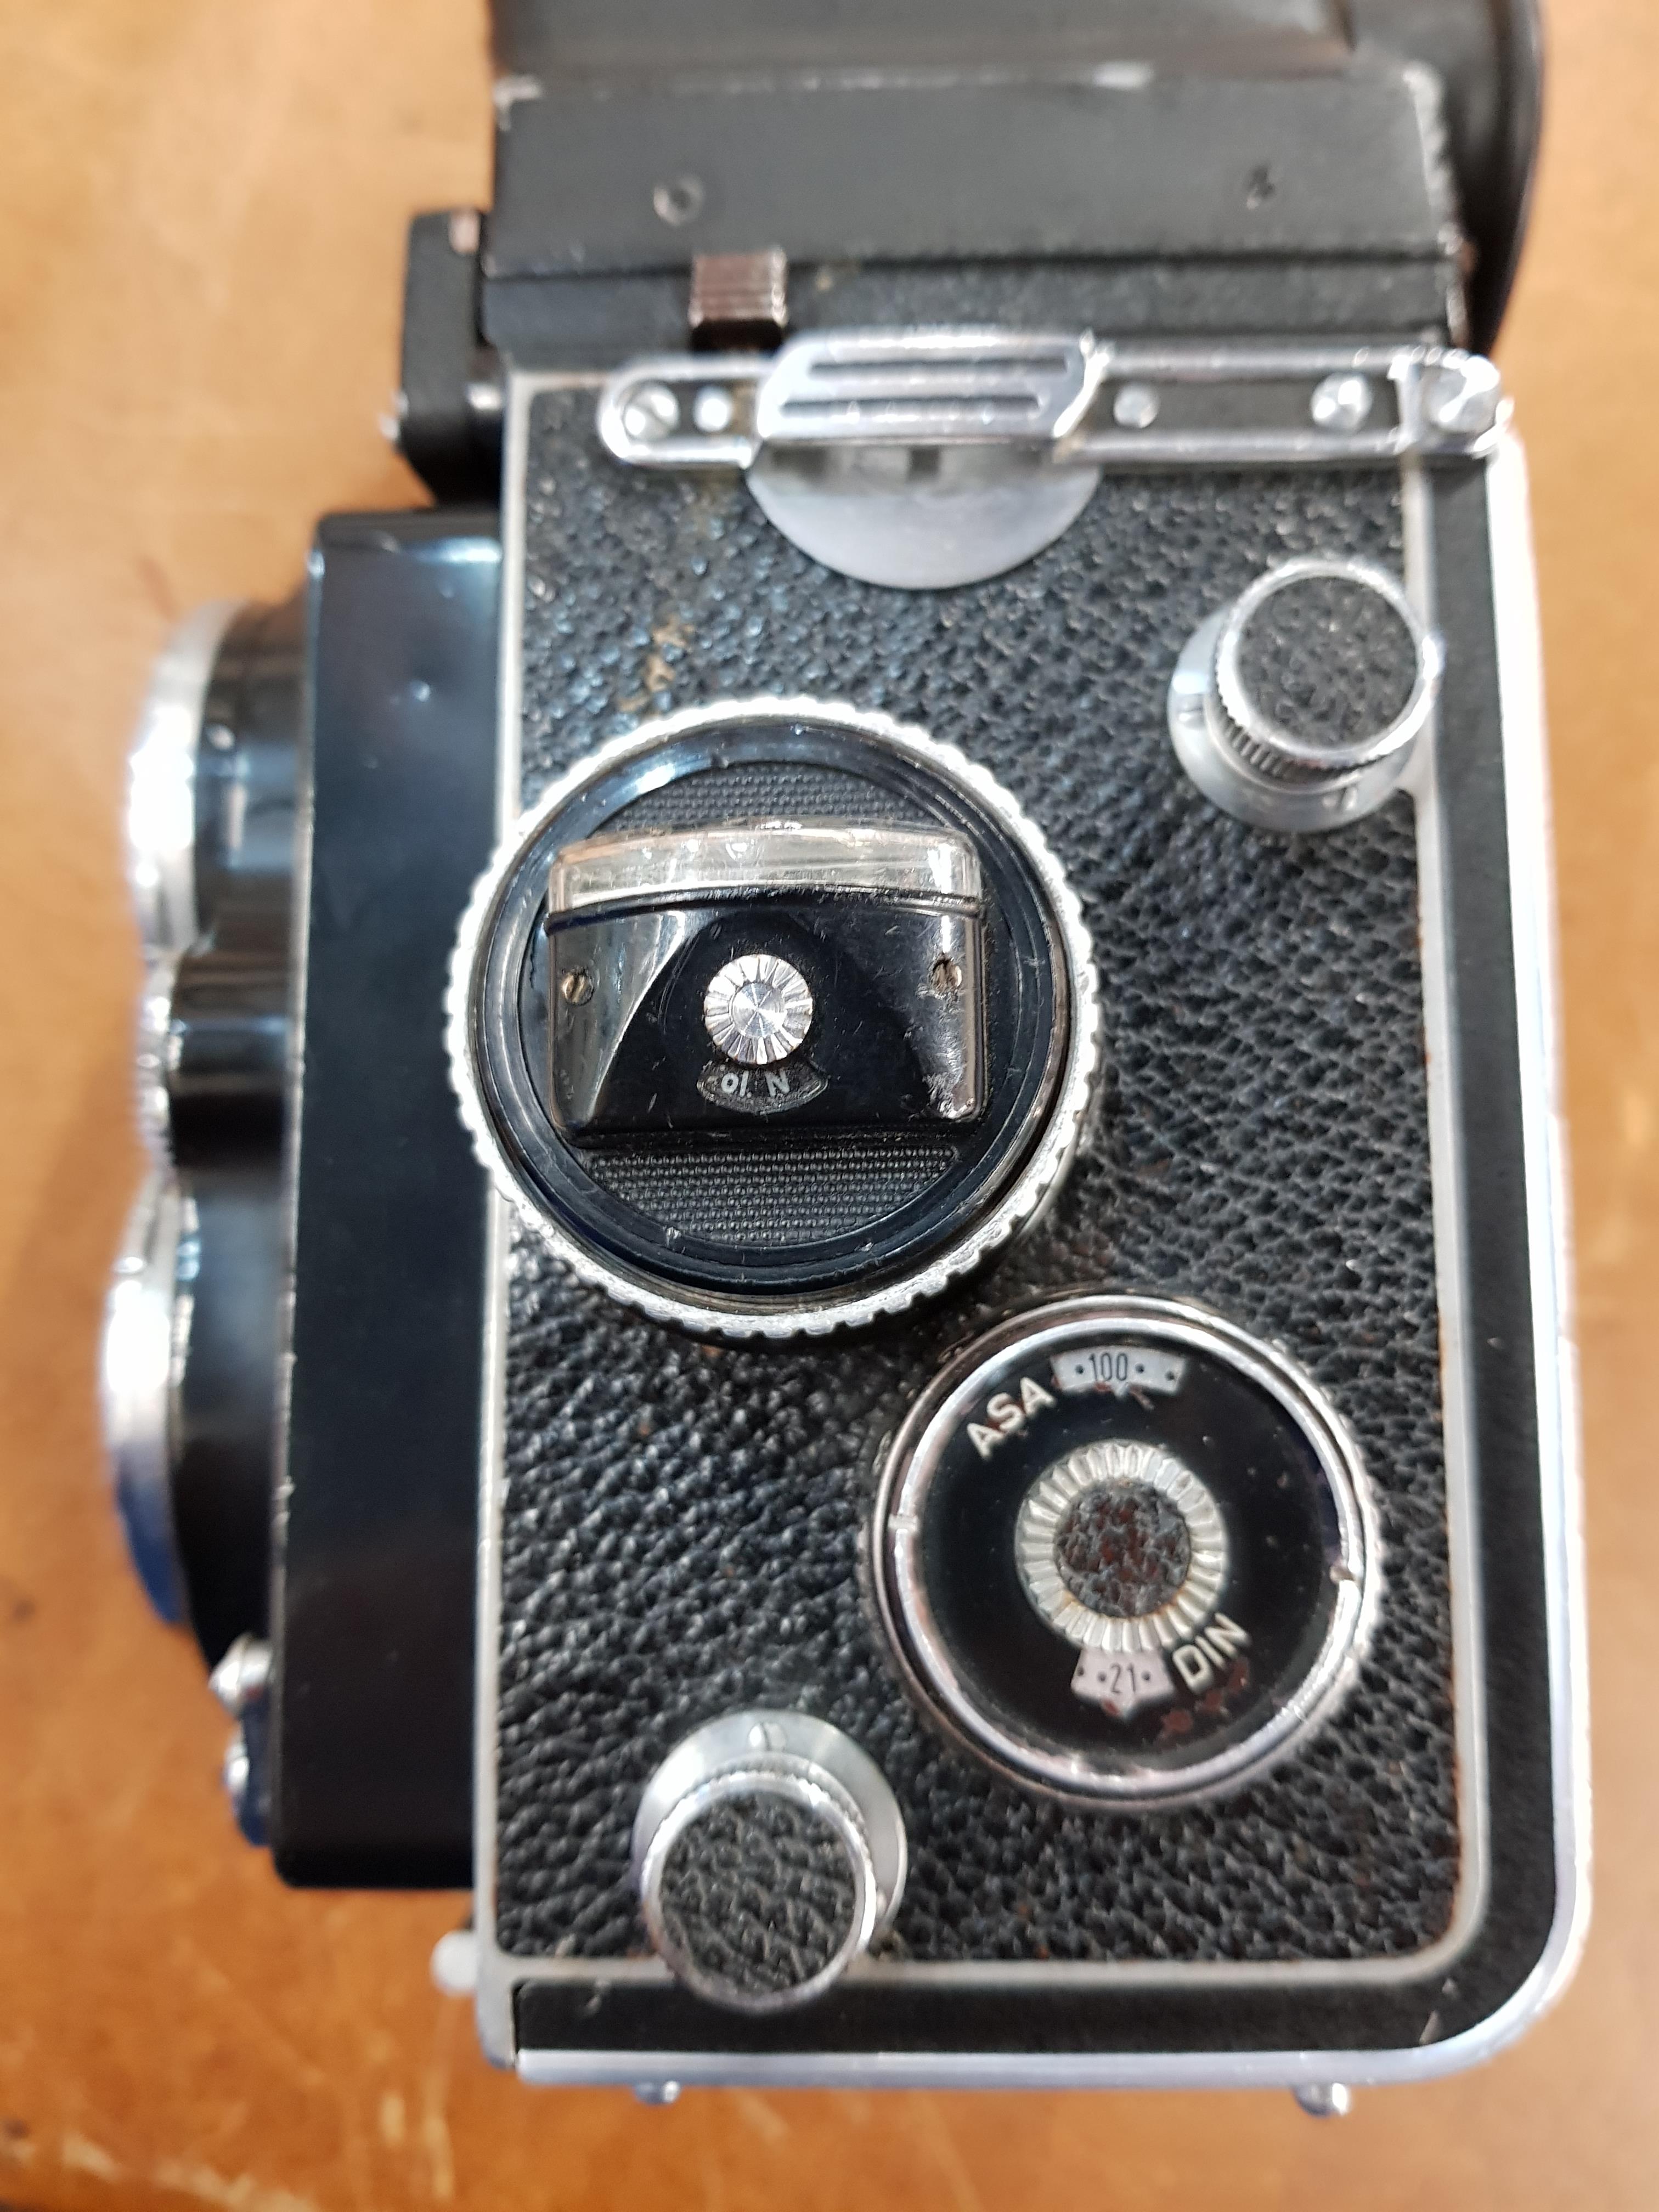 FRANKE & HEIDECKE Rolliflex TLR Planar F2.8/80mm lens #3937240 Pentaprism - Image 5 of 10